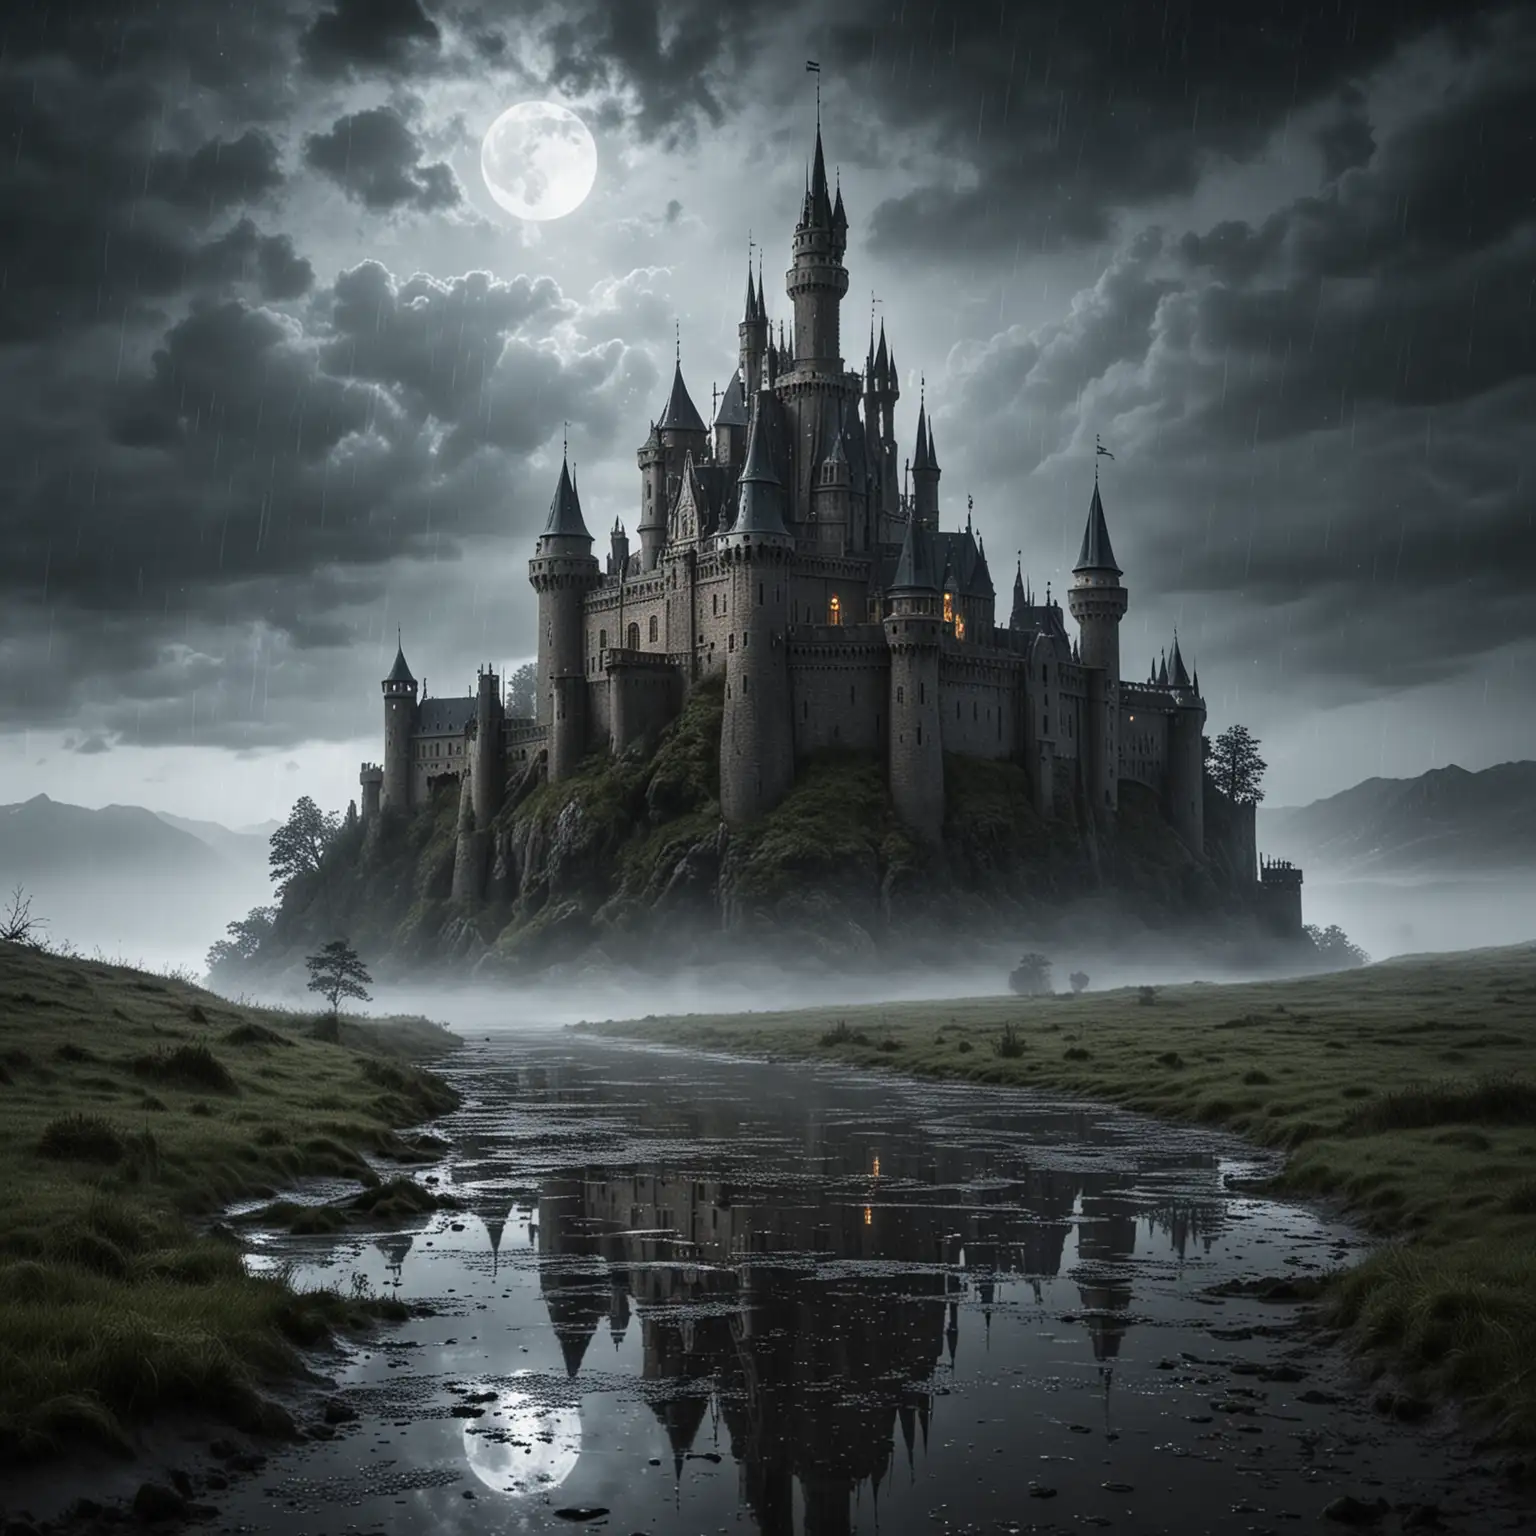 На фоне темного и грозного неба или туманного ландшафта выделяется изображение замка, словно созданного из дождя. Стены замка кажутся сотканными из мелких капель, блестящих под лунным светом или мягким светом фонарей. Этот эффект может создаваться с помощью художественных приемов, чтобы замок выглядел нереально и волшебно.

Замок сам по себе может иметь загадочную архитектуру, с высокими башнями, острыми крышами и узкими окнами, призывающими к исследованию. Вокруг замка могут быть дождливые или мокрые пейзажи, с отражениями в лужах или разбрызганными каплями воды